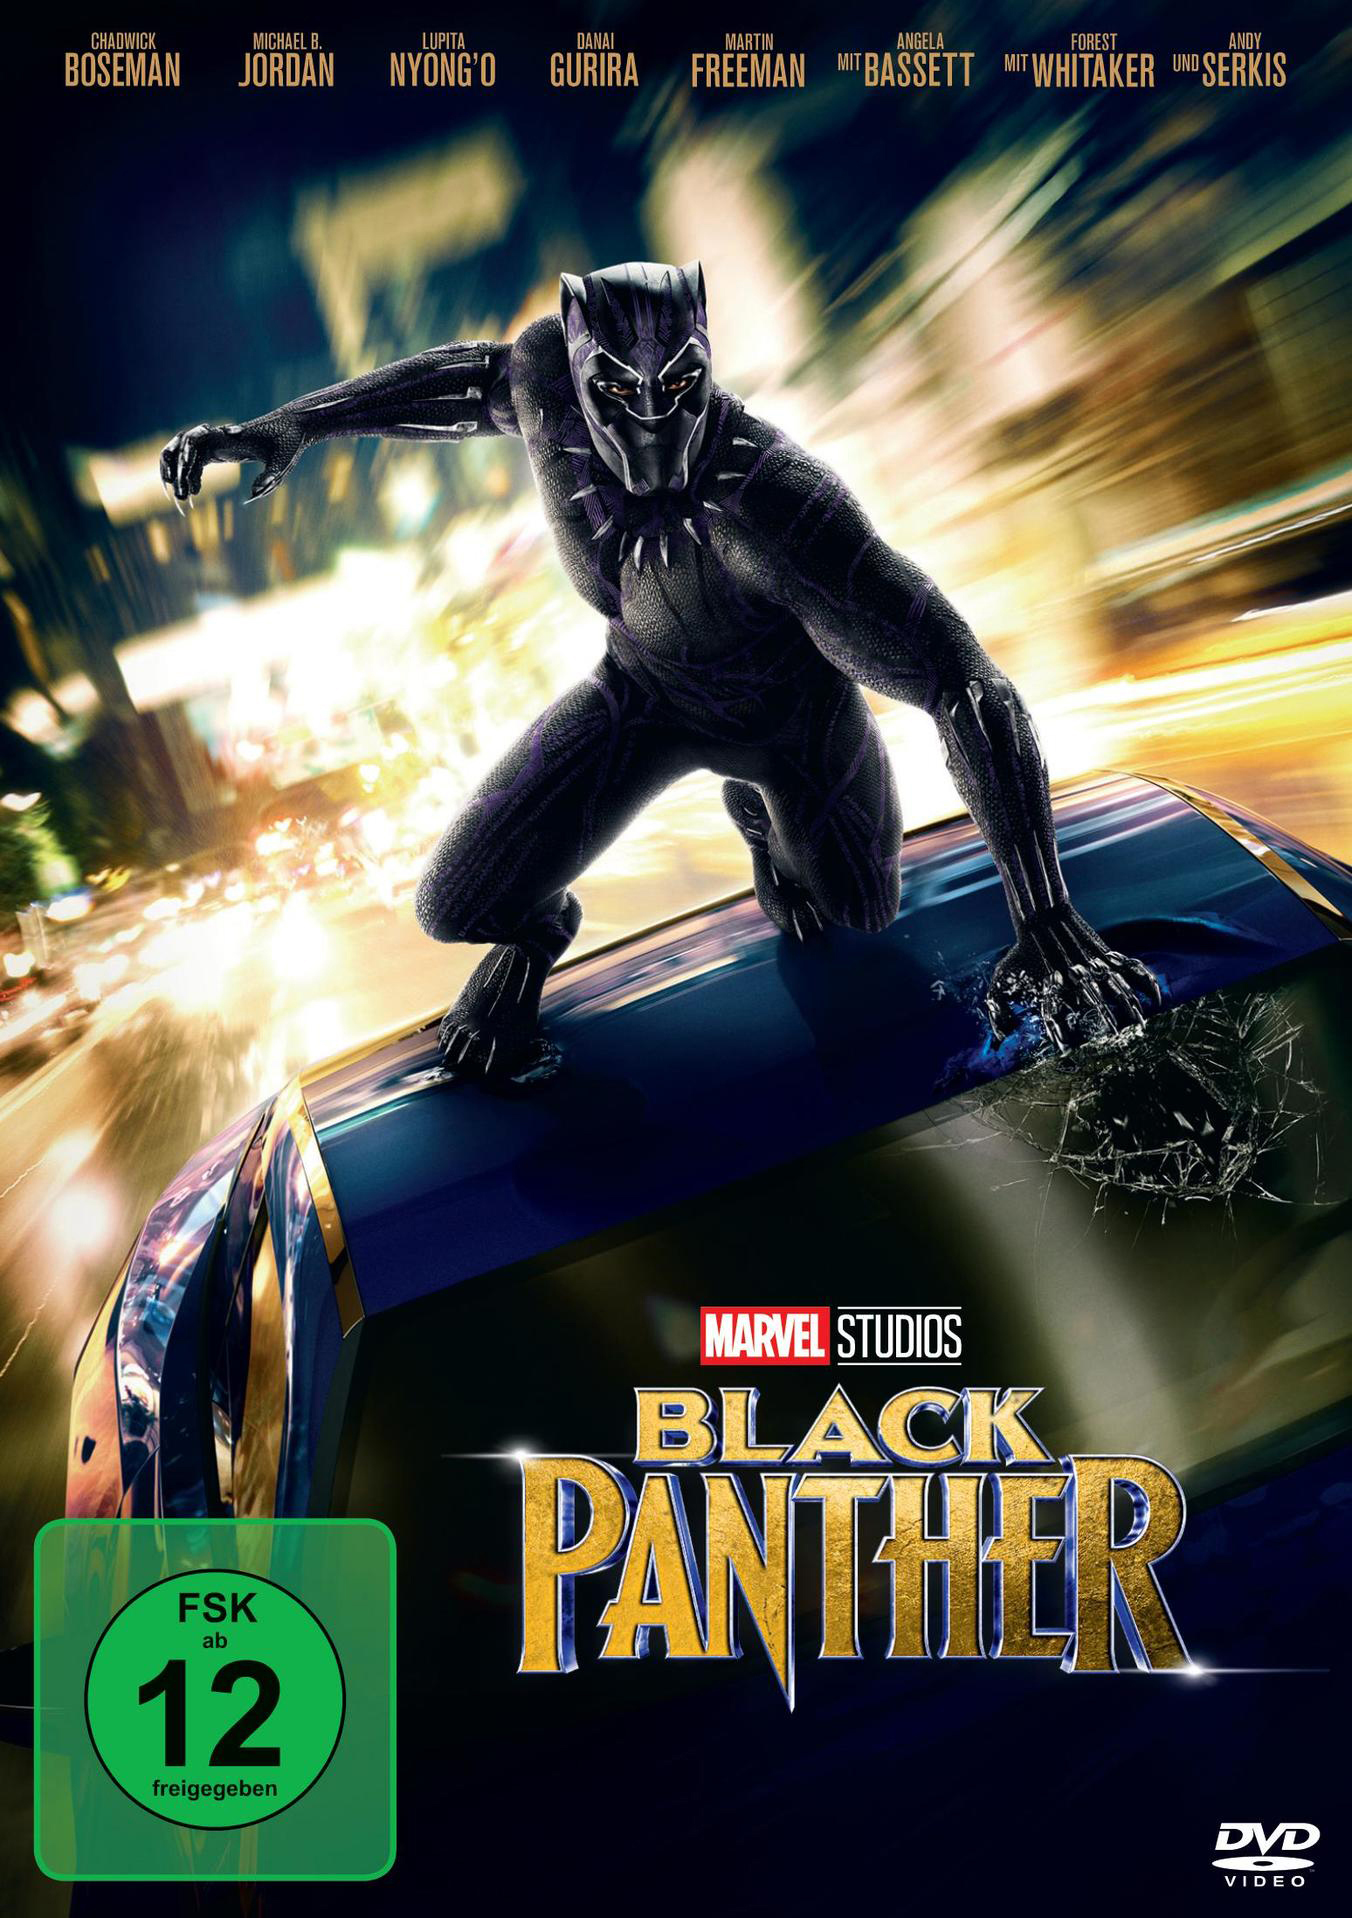 Black Panther DVD